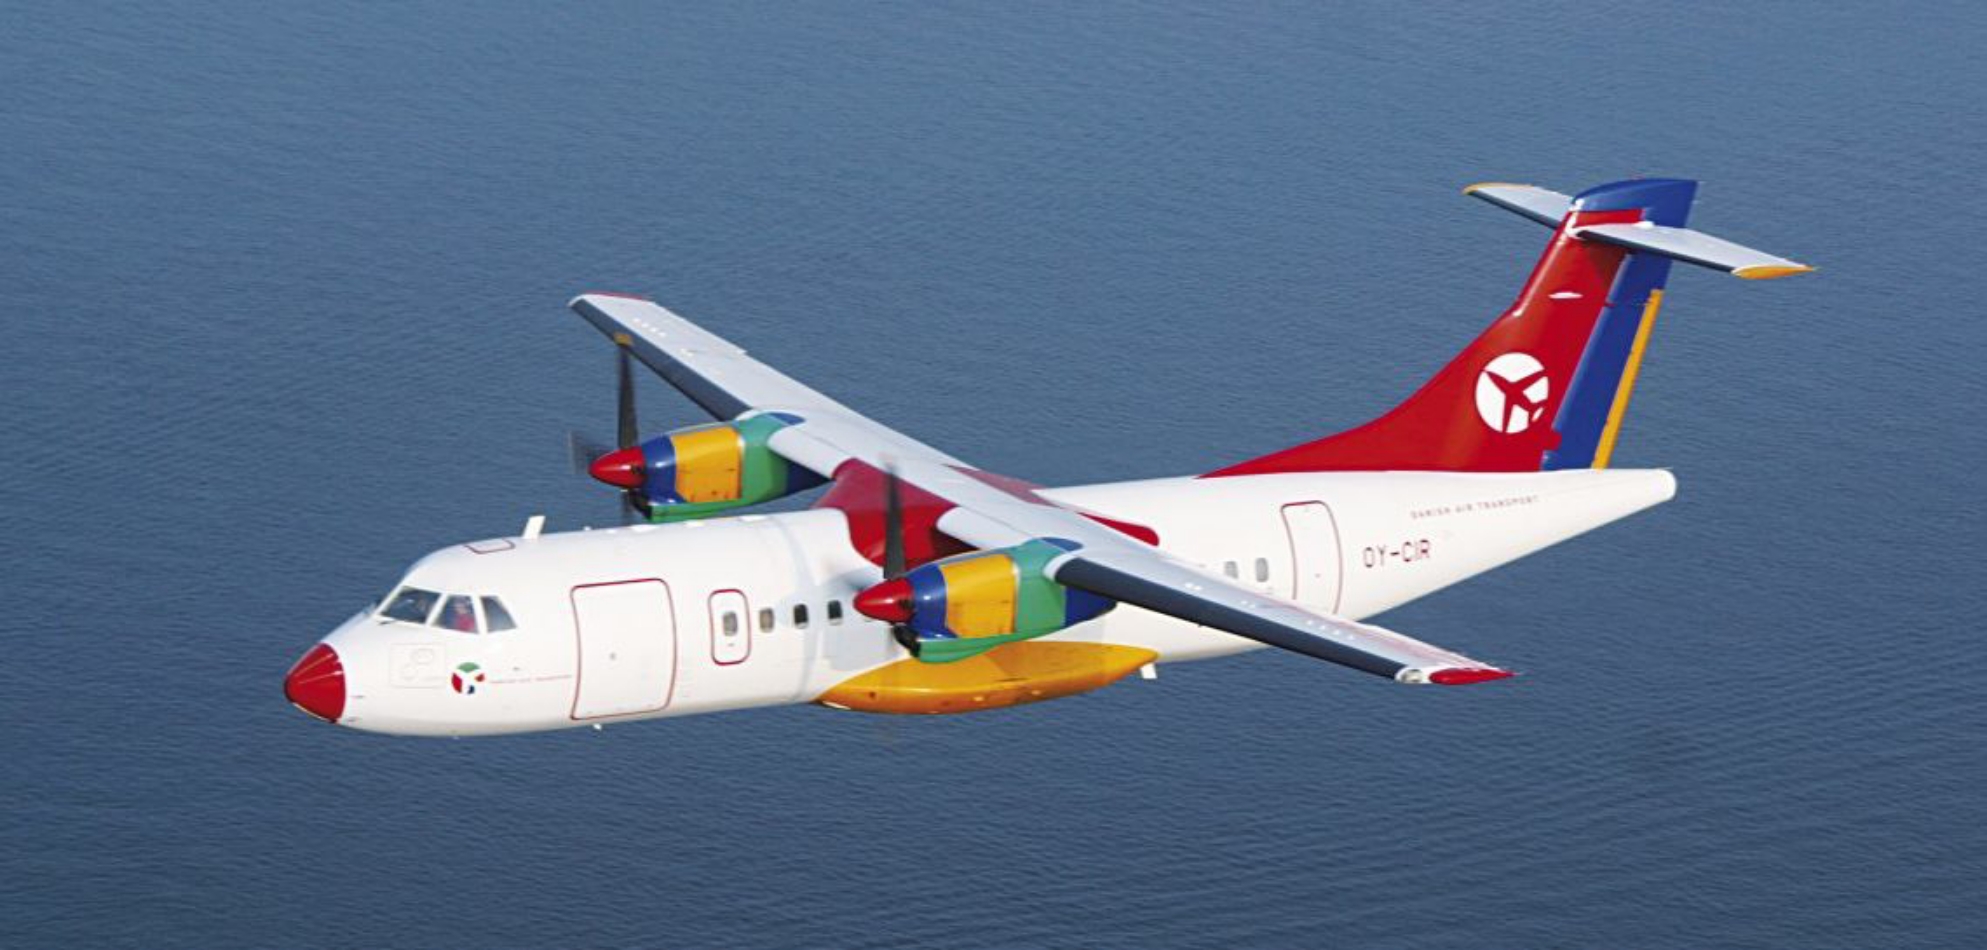 Pantelleria, prorogata concessione voli della continuità territoriale a Dat